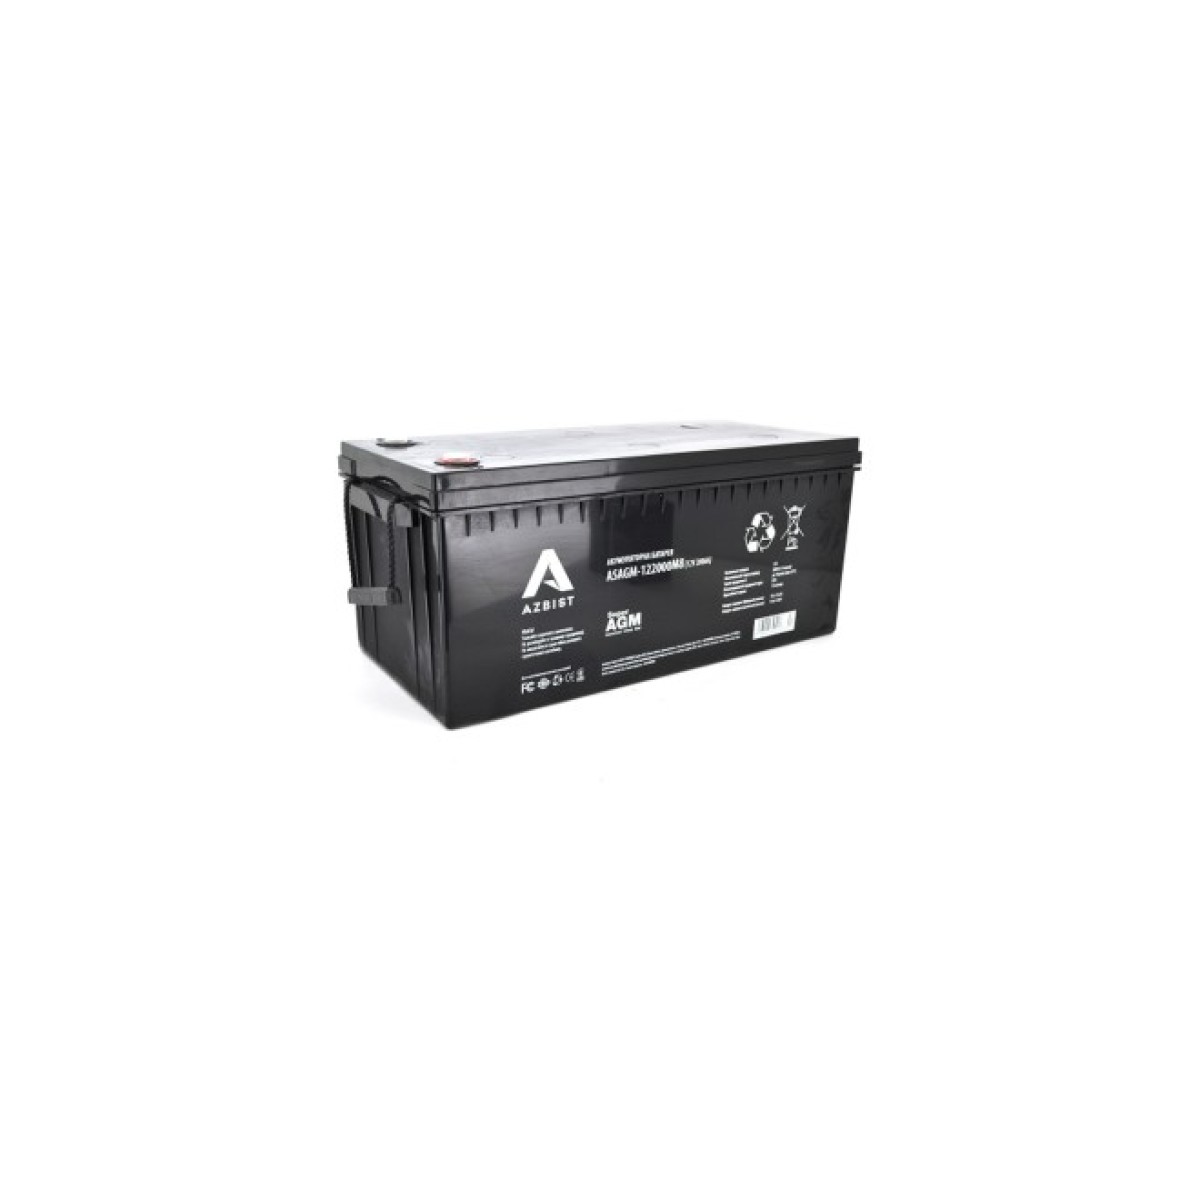 Батарея к ИБП AZBIST 12V 200 Ah Super AGM (ASAGM-122000M8) 256_256.jpg